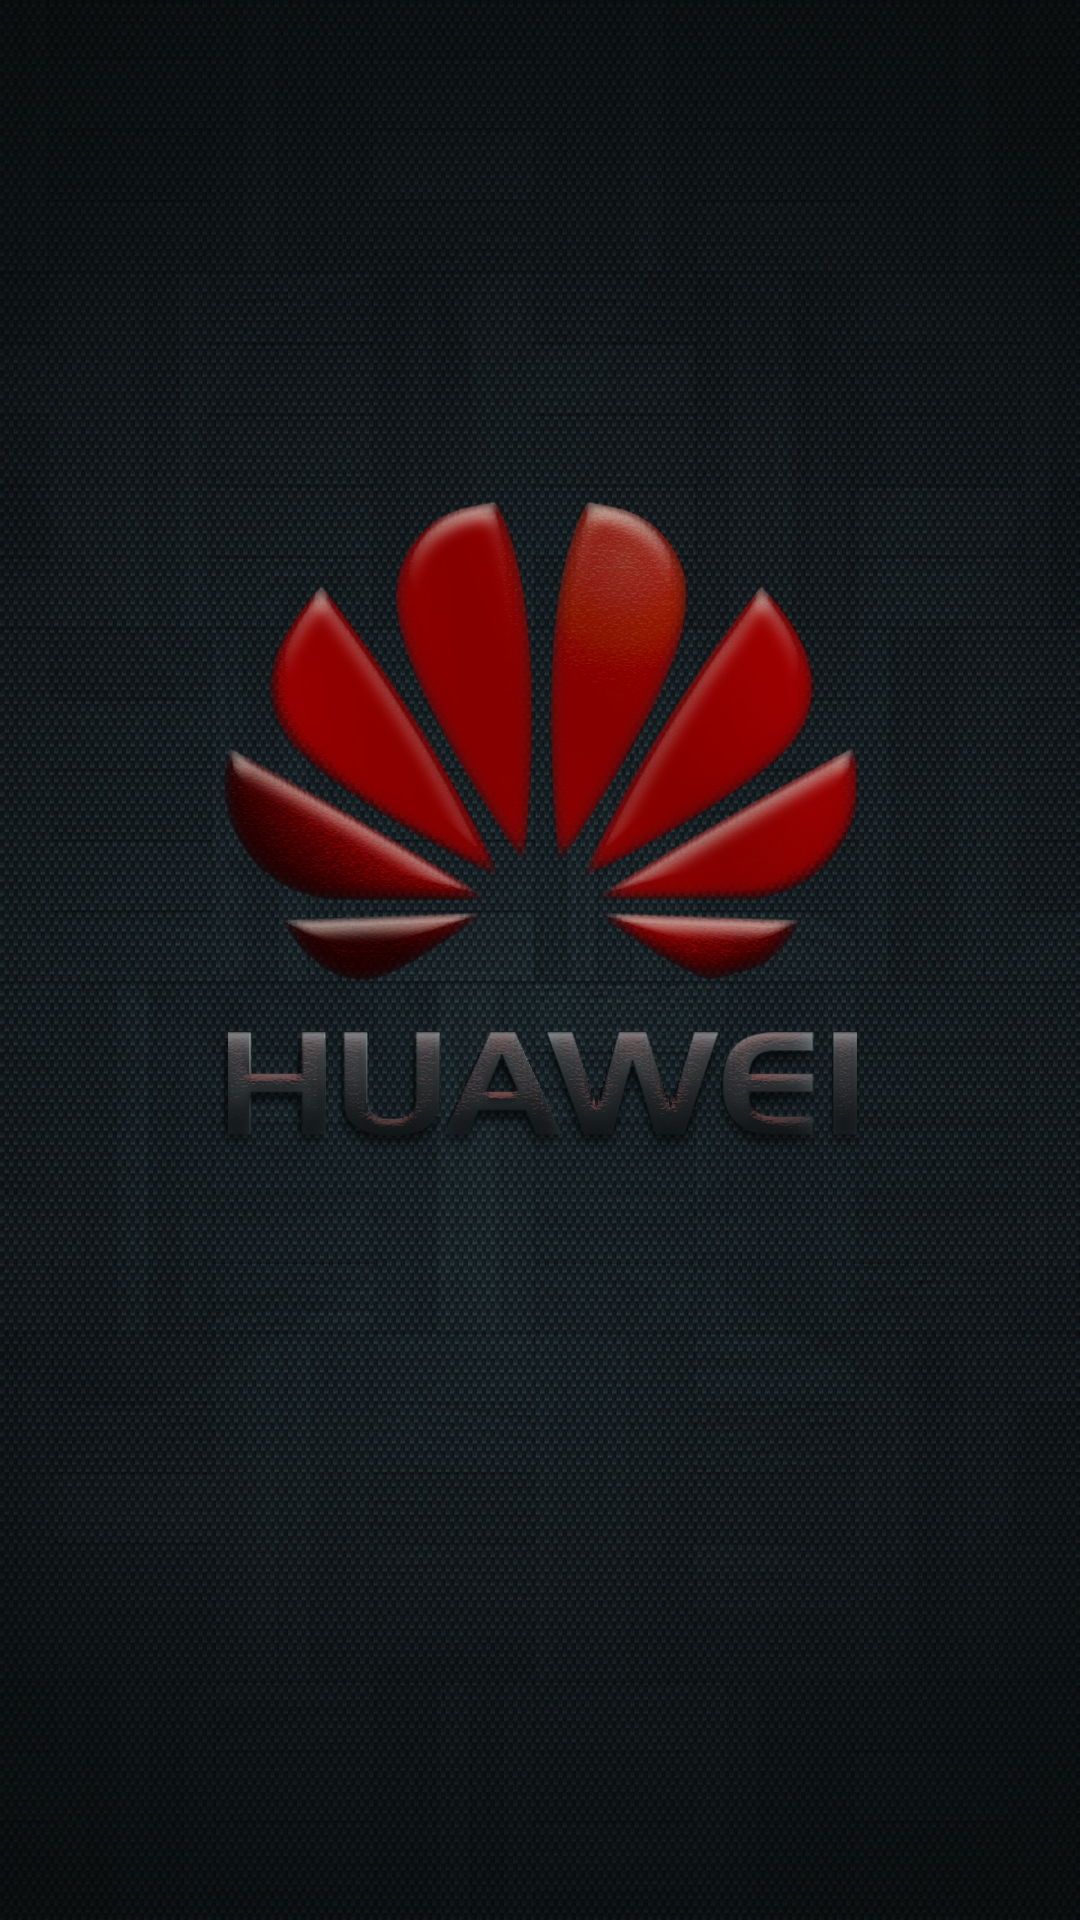 Free download Huawei Logo Wallpaper 06 by leg aMk end 2160x1920